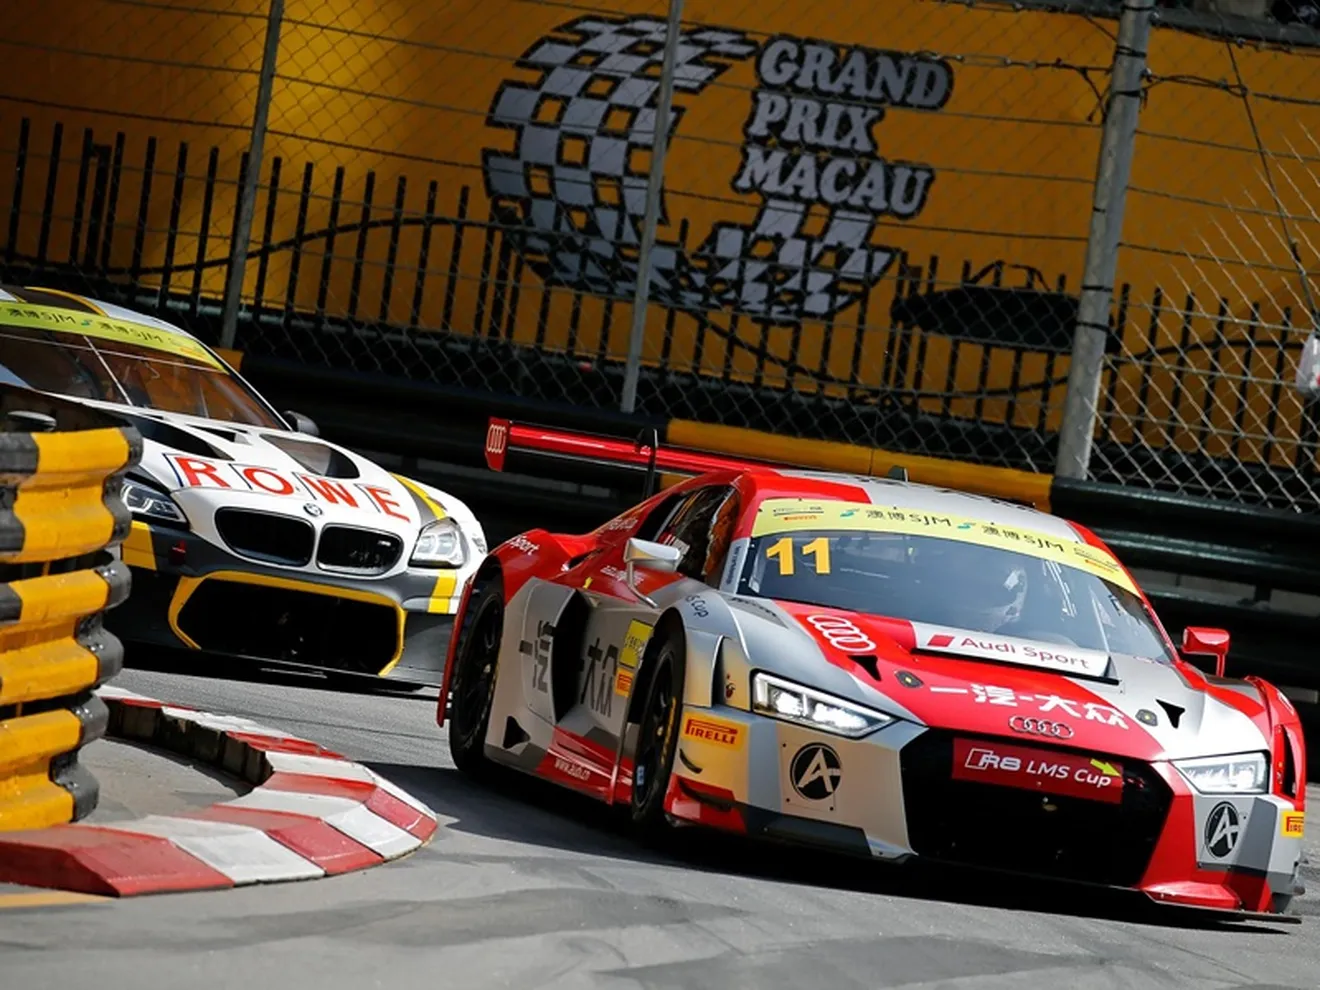 Veinte coches y siete marcas disputan la FIA GT World Cup